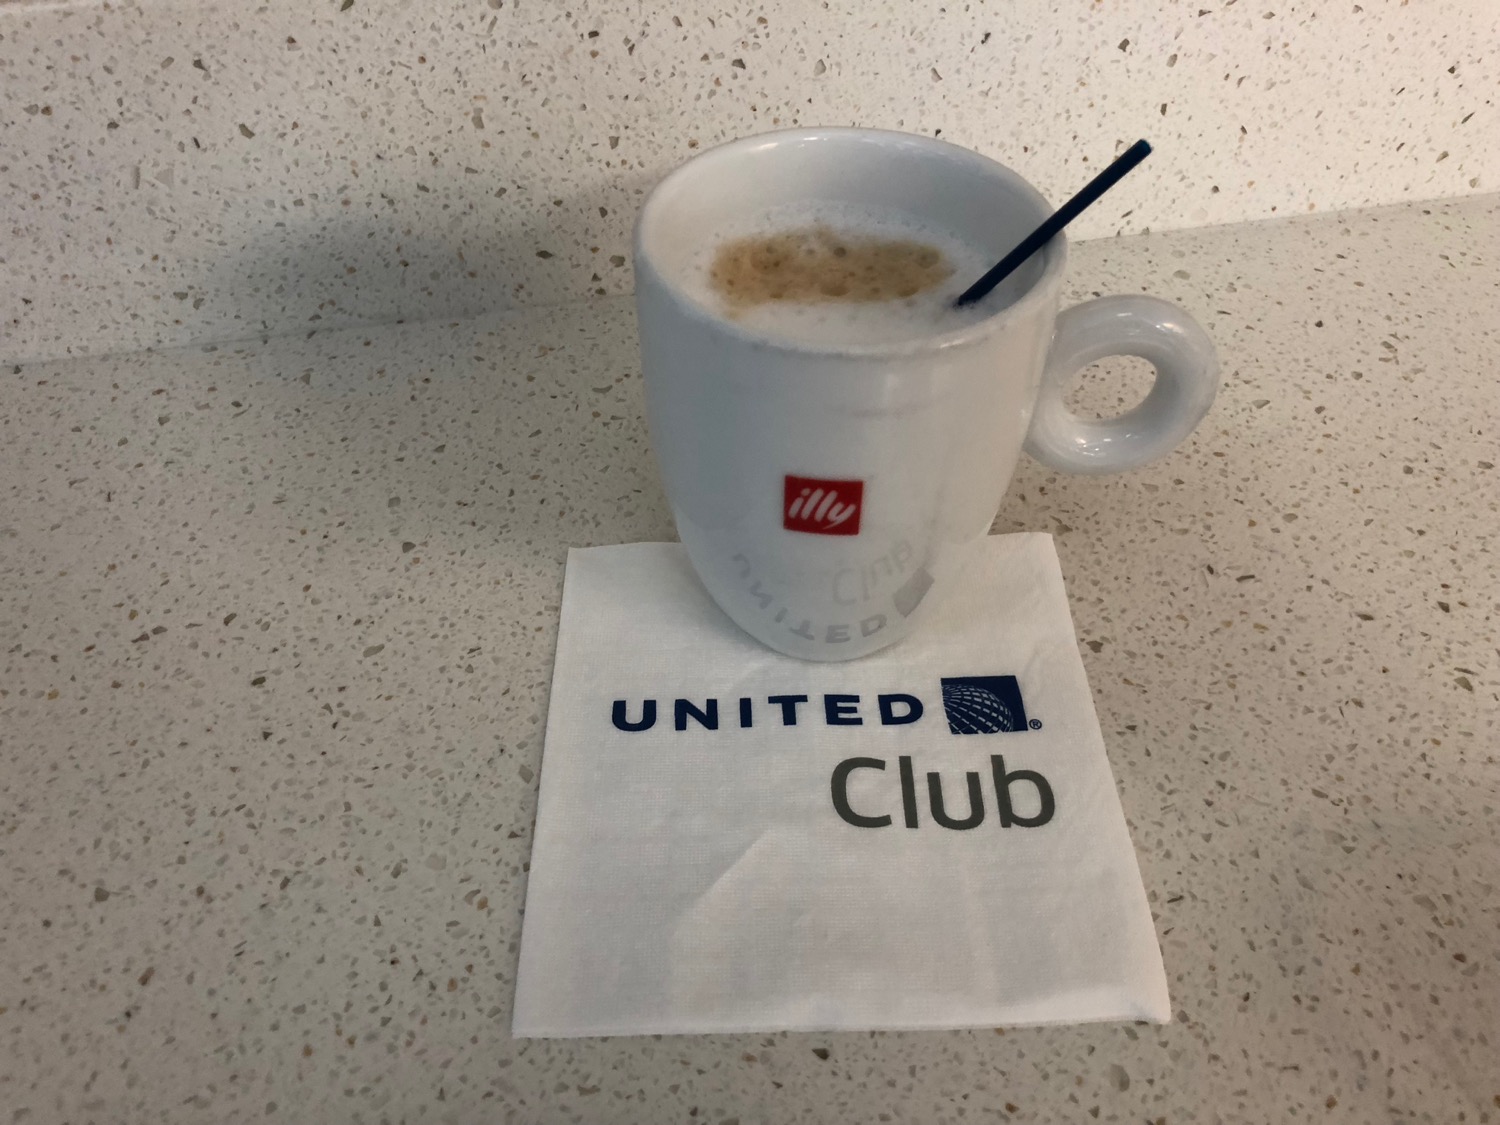 a white mug with a straw on a napkin